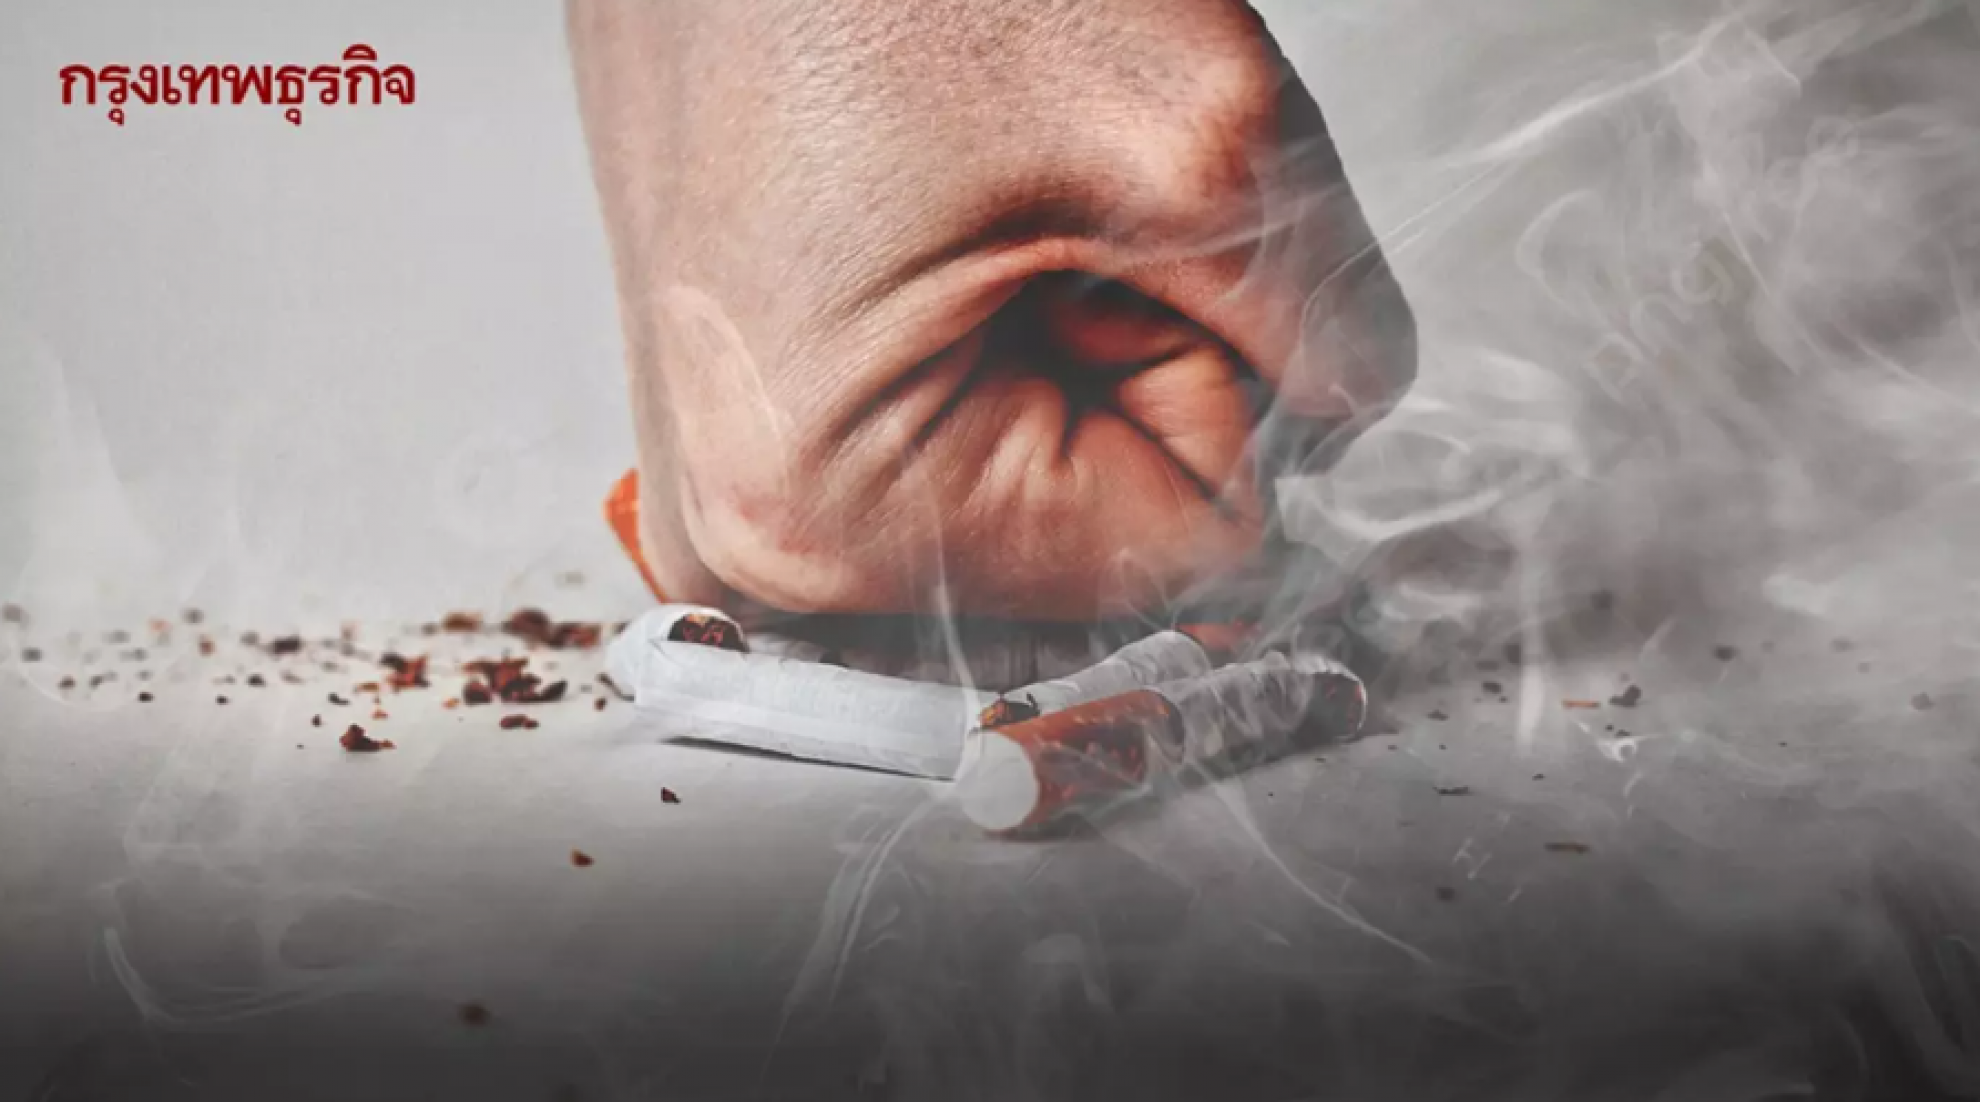 'บุหรี่' กับความท้าทายไทย ป้องกันเยาวชน ก้าวสู่ 'นักสูบหน้าใหม่'